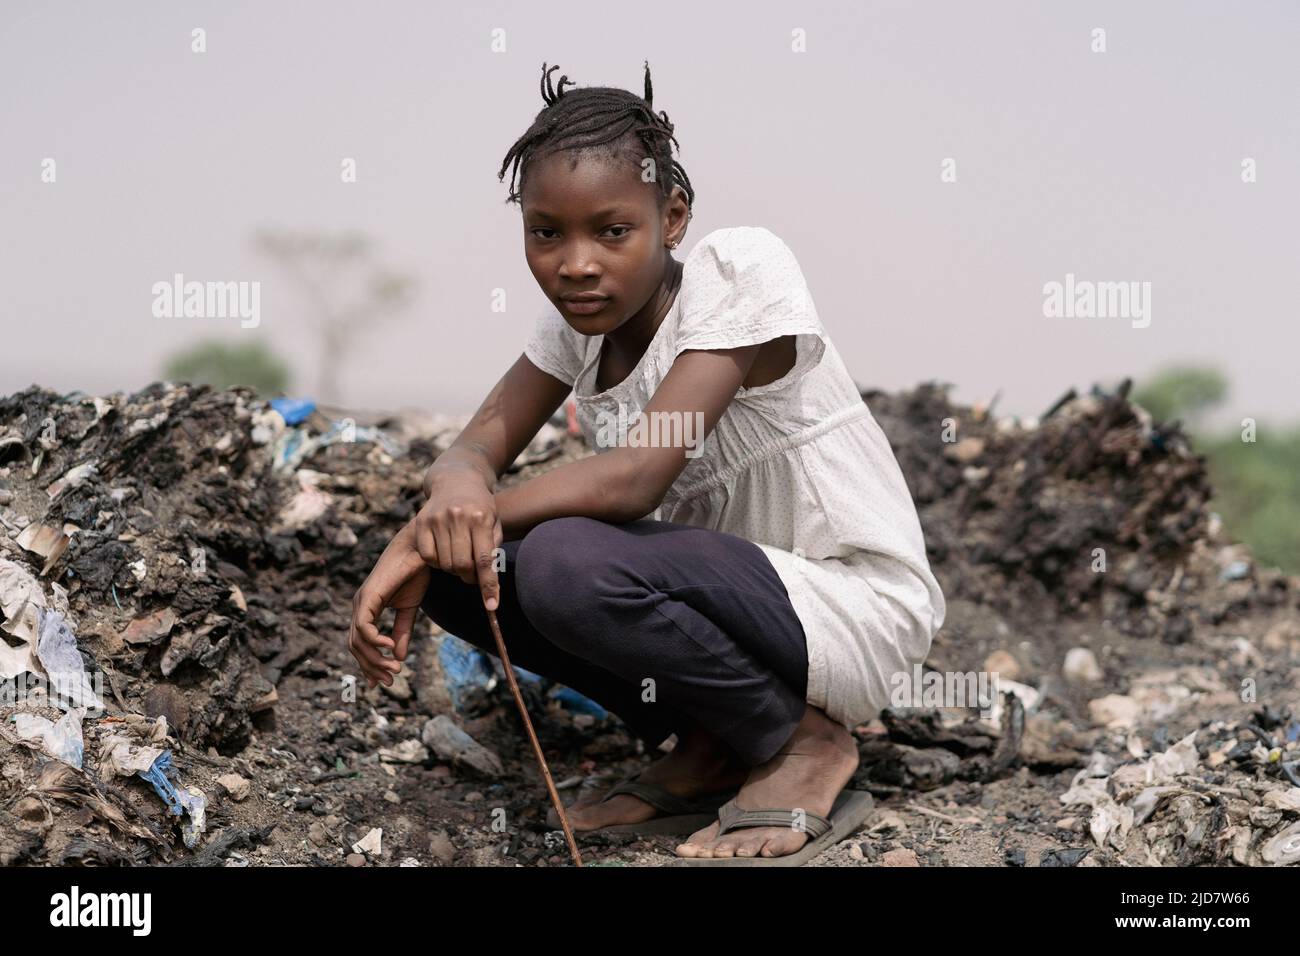 Triste fille africaine au regard accusatoire, qui s'agenouille au milieu du gaspillage, contemplant la catastrophe environnementale de son pays Banque D'Images